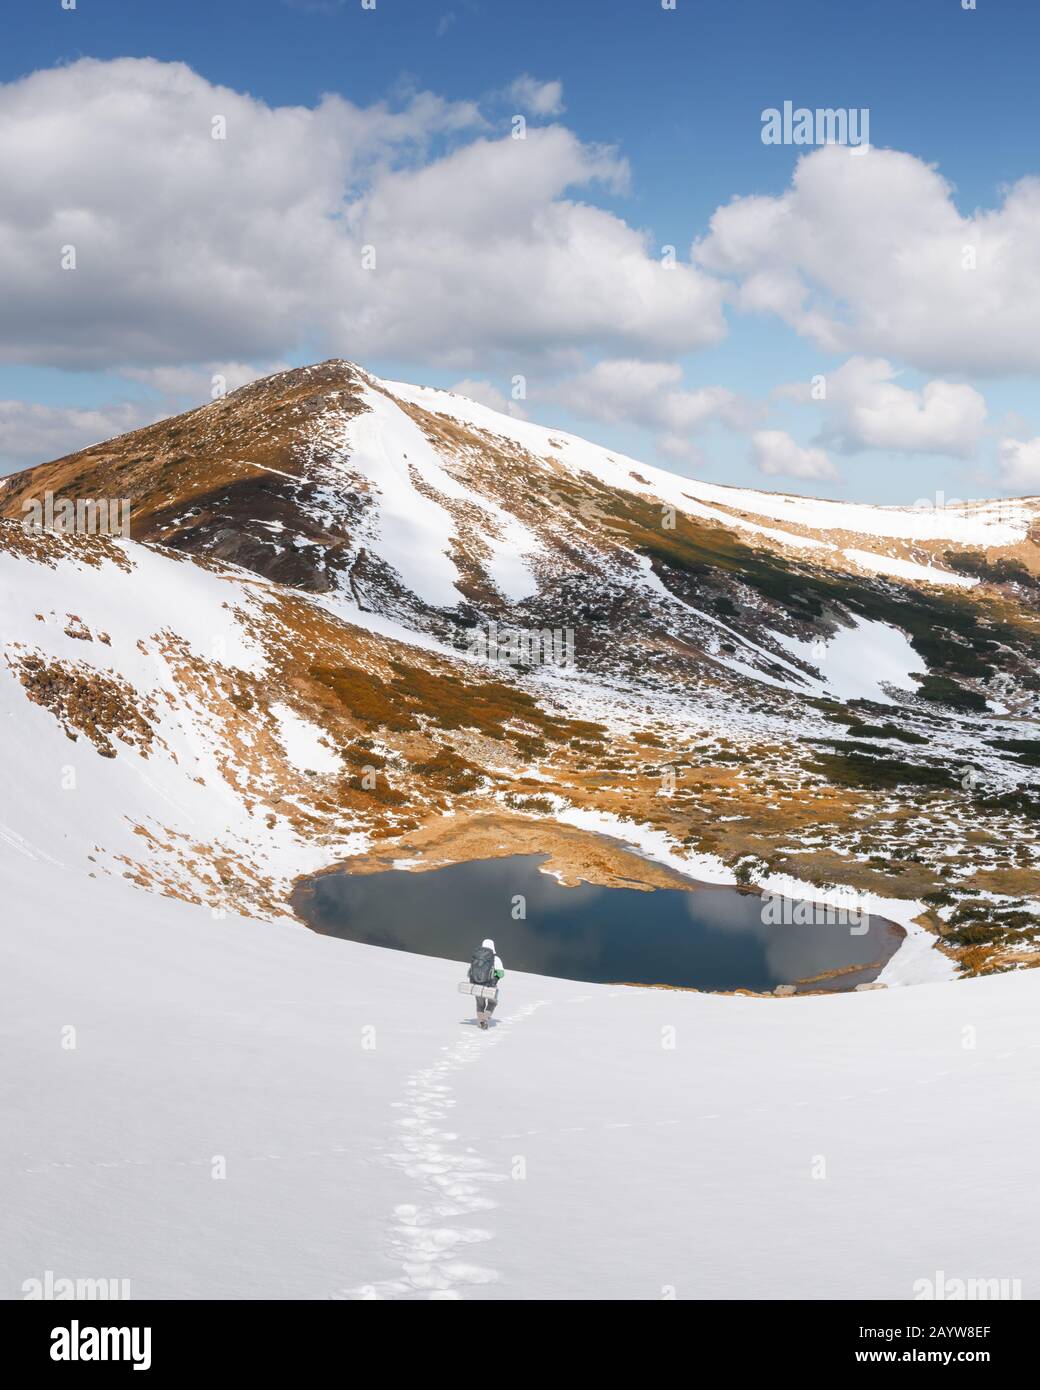 Paysage incroyable avec lac dans les montagnes enneigées printanières. Randonneur avec sac à dos qui descend dans la neige Banque D'Images